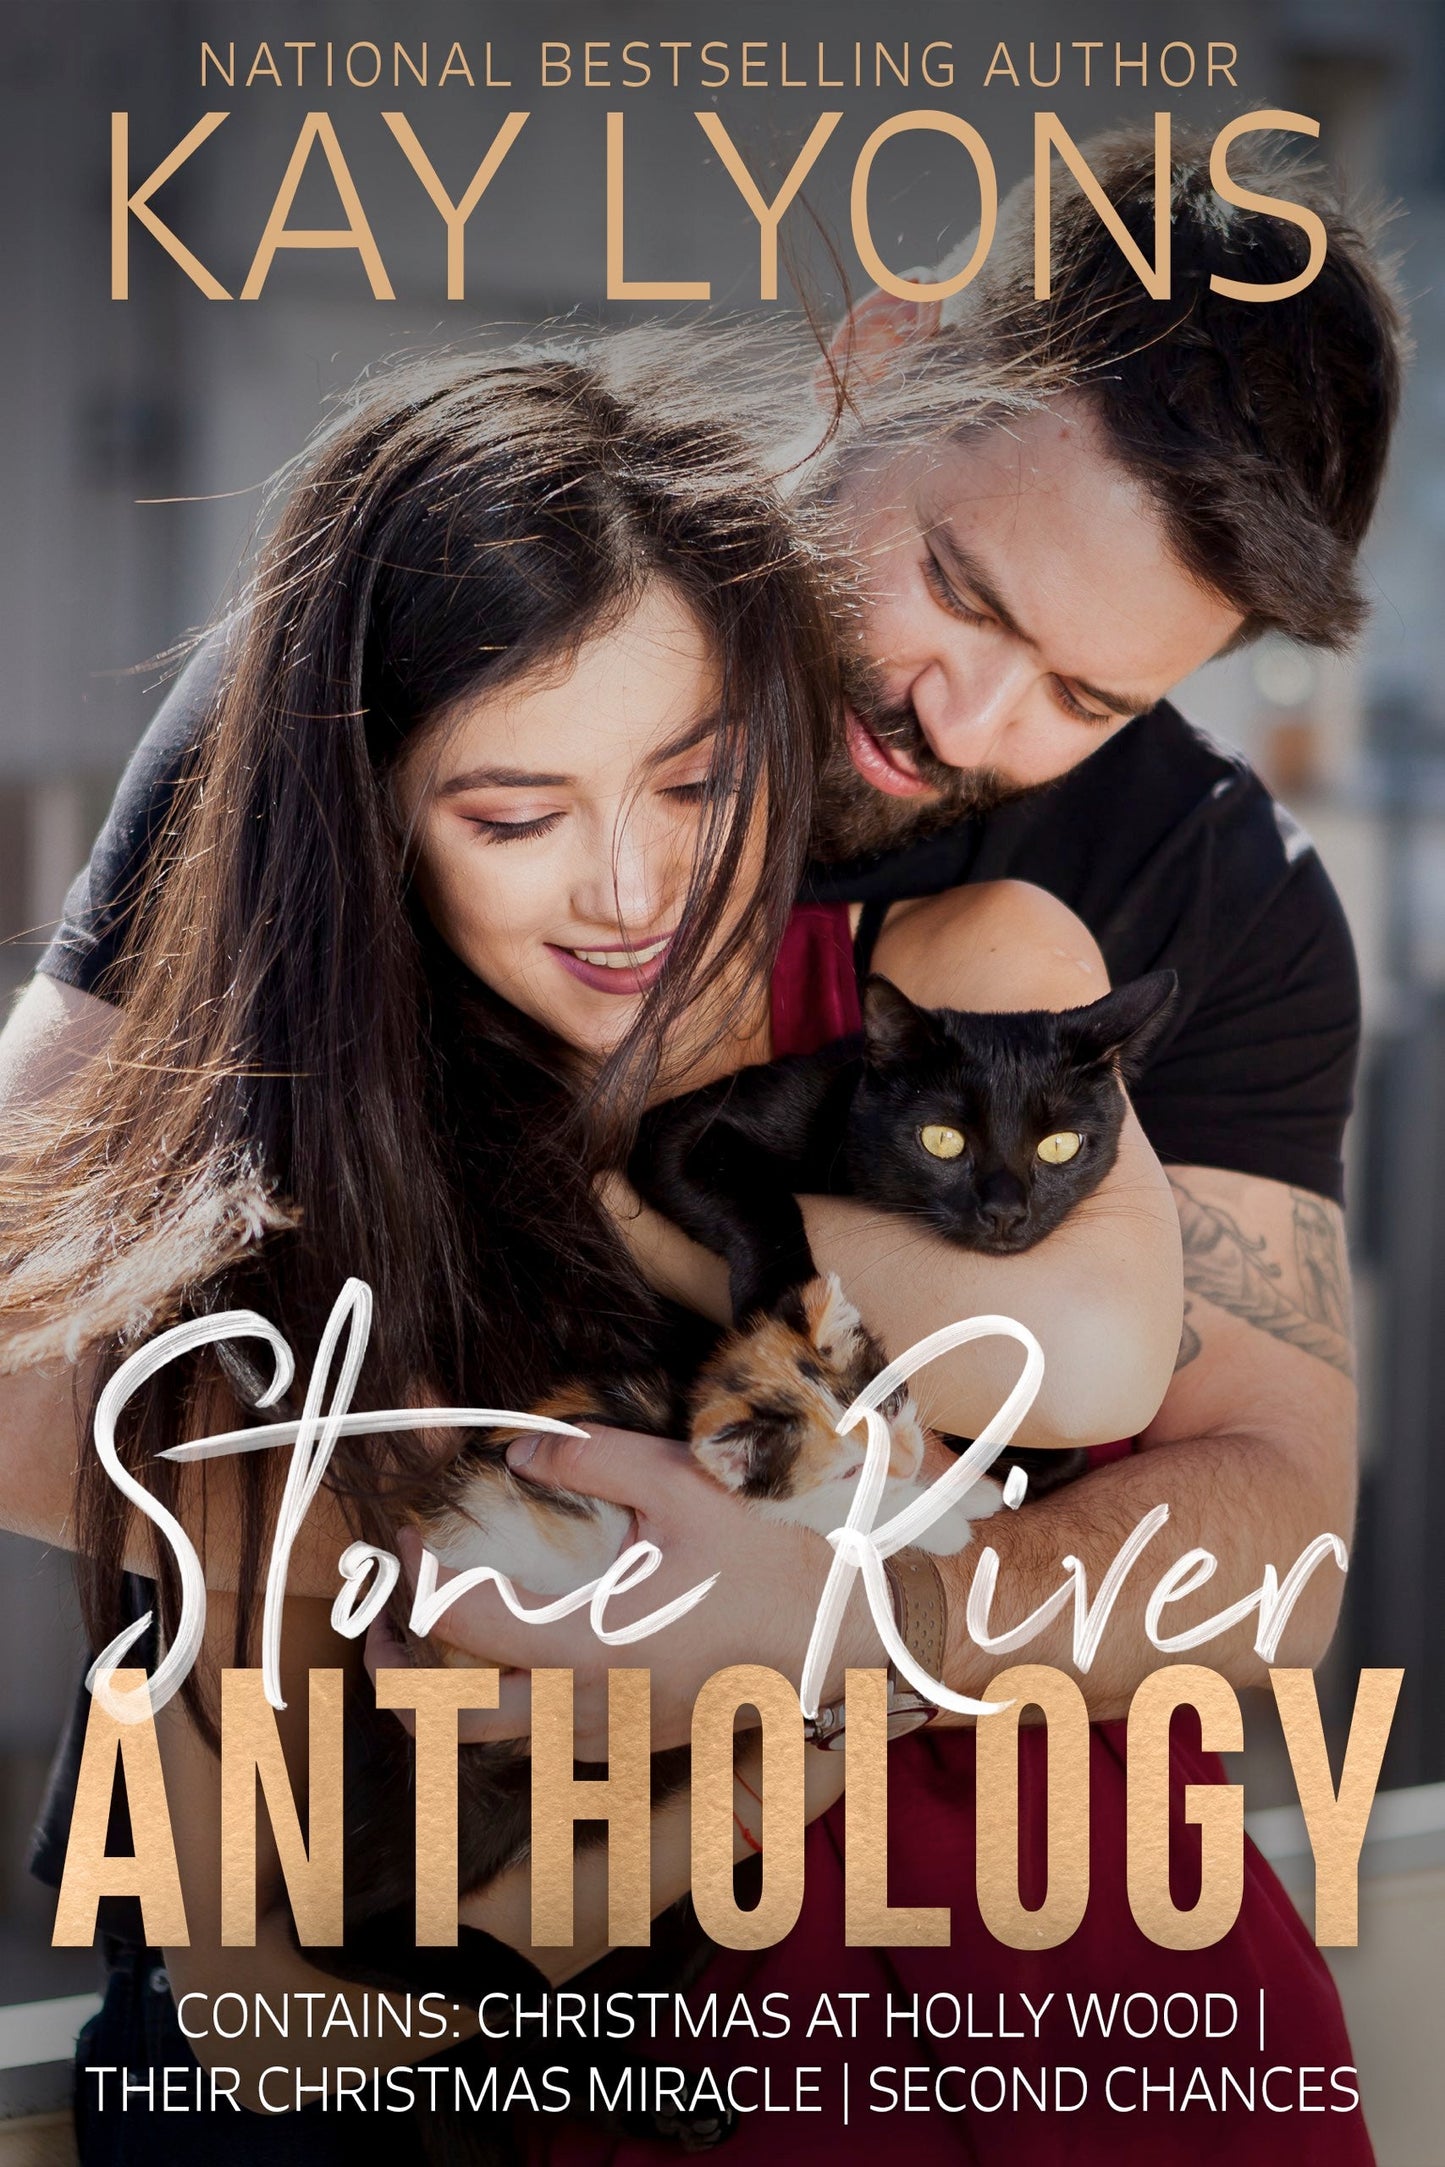 Stone River Anthology